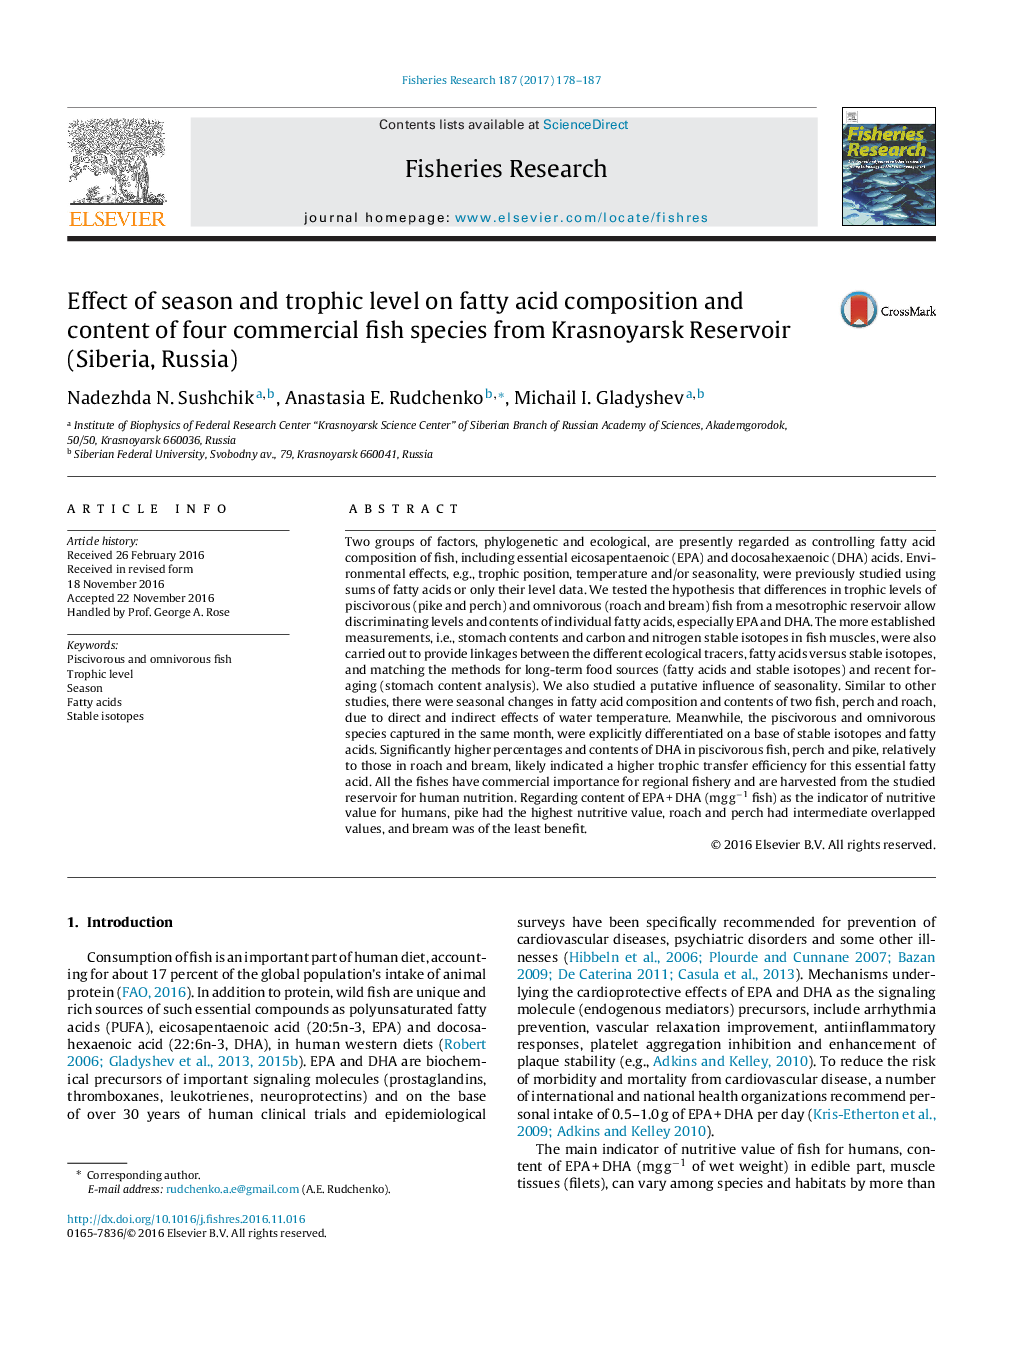 اثر فصل و سطح طوفیک بر ترکیب اسید چرب و محتوی چهار گونه ماهی تجاری از مخزن کراسنویارسک (سیبریا، روسیه) 